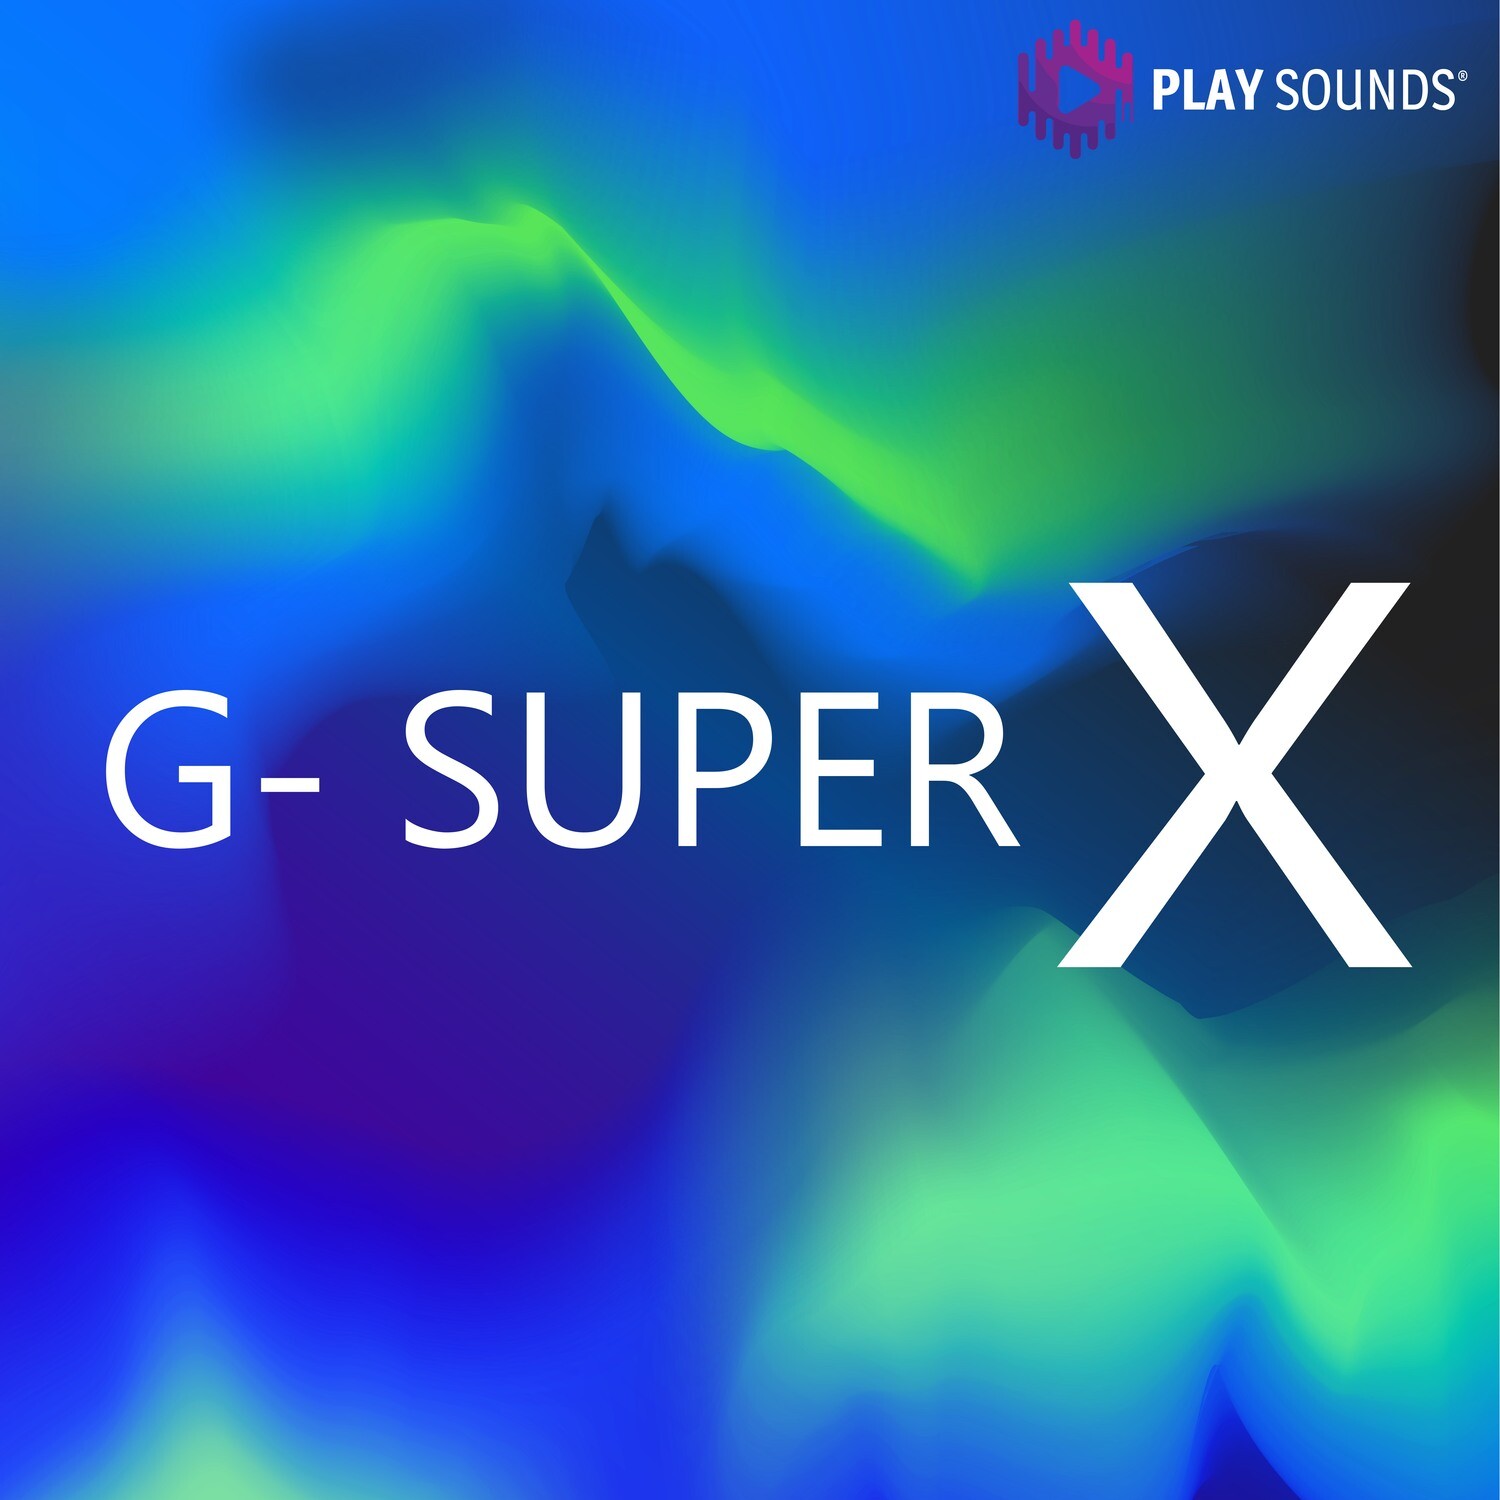 G-SUPER X